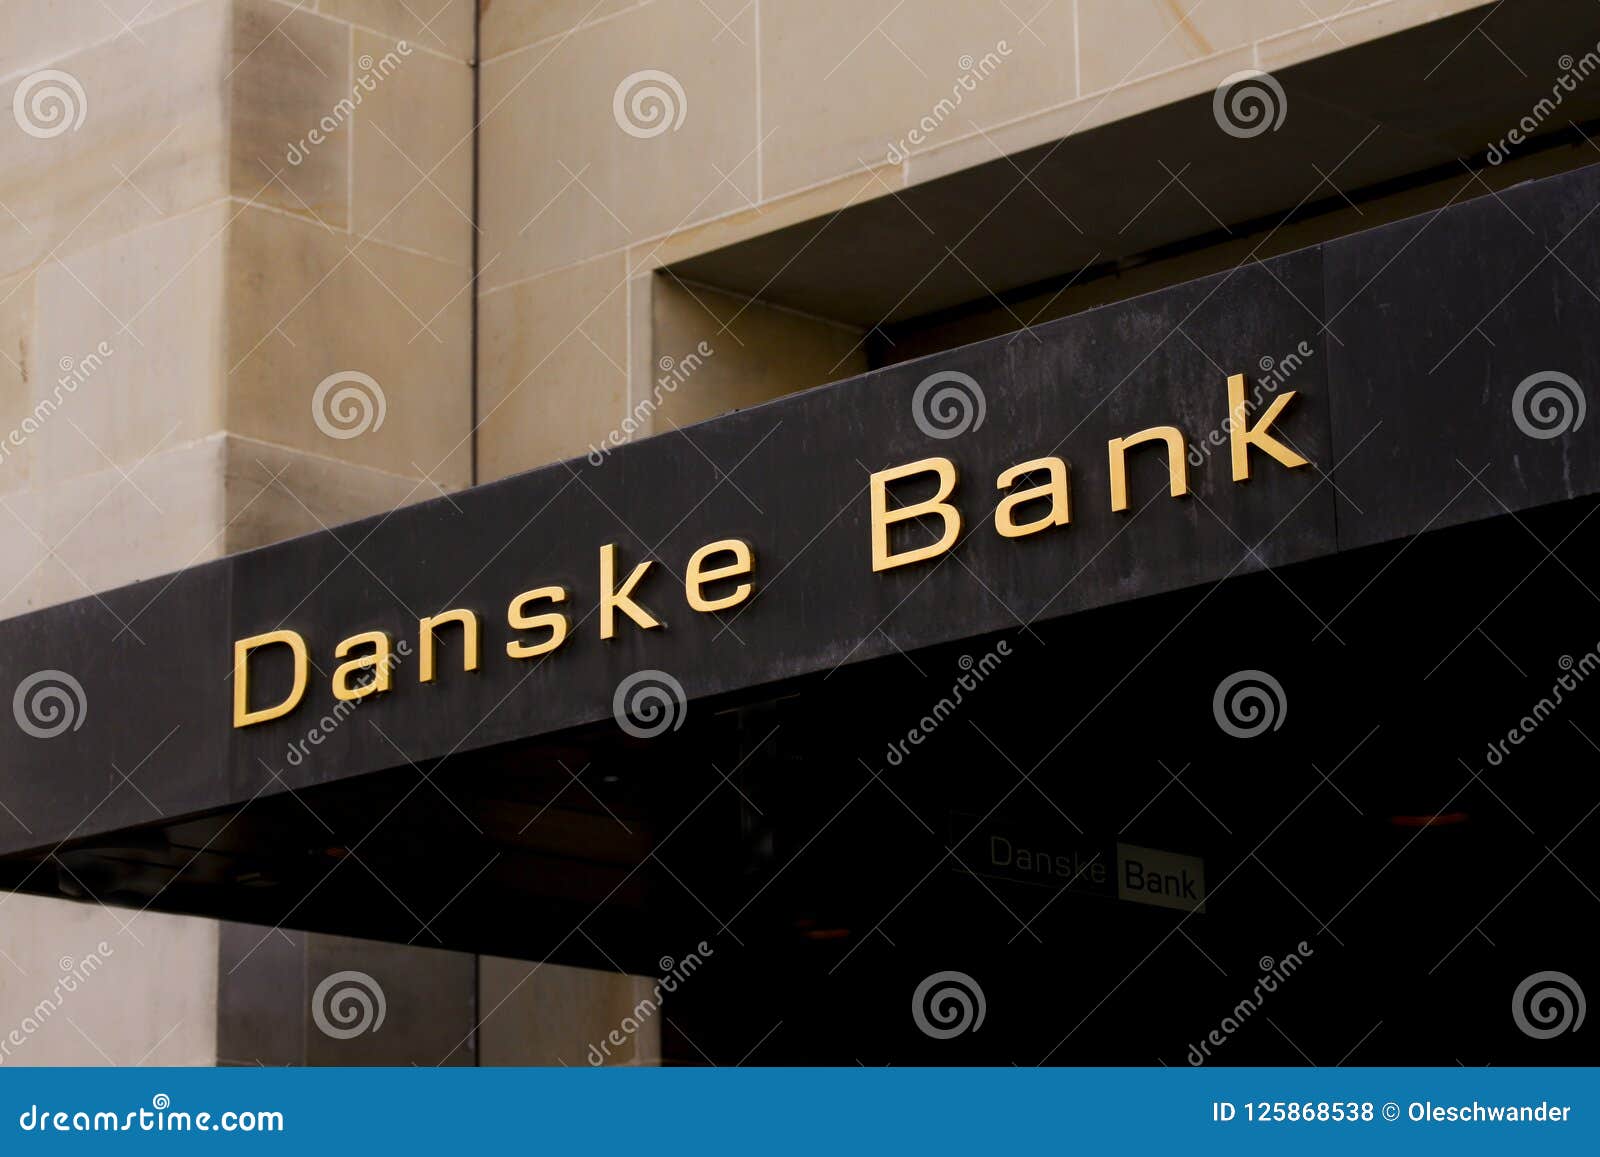 danske bank stock